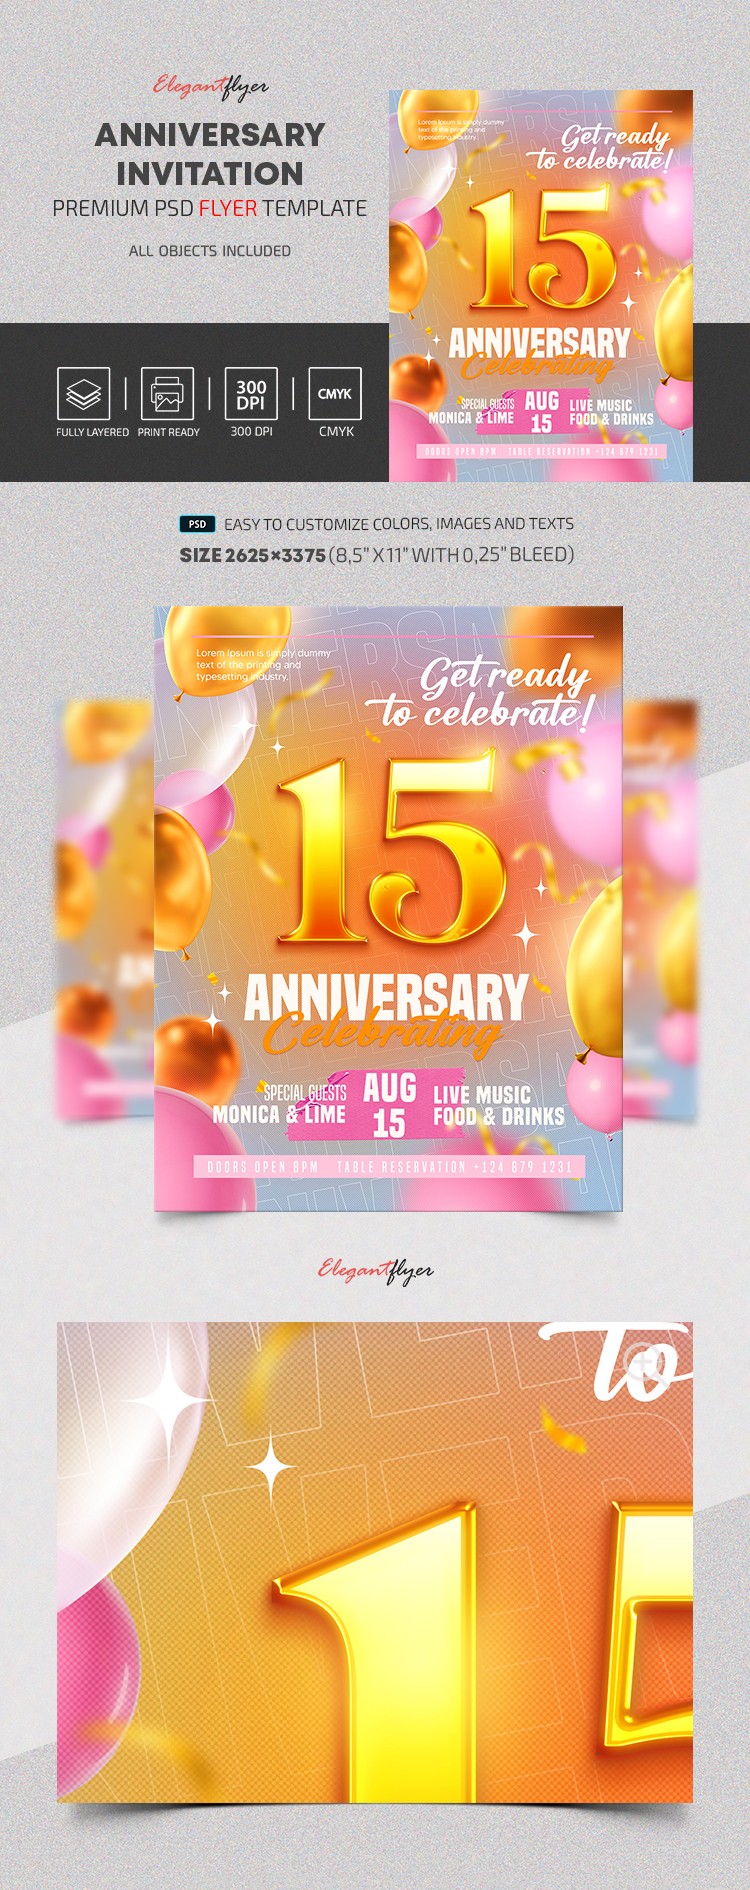 Anniversary Invitation by ElegantFlyer